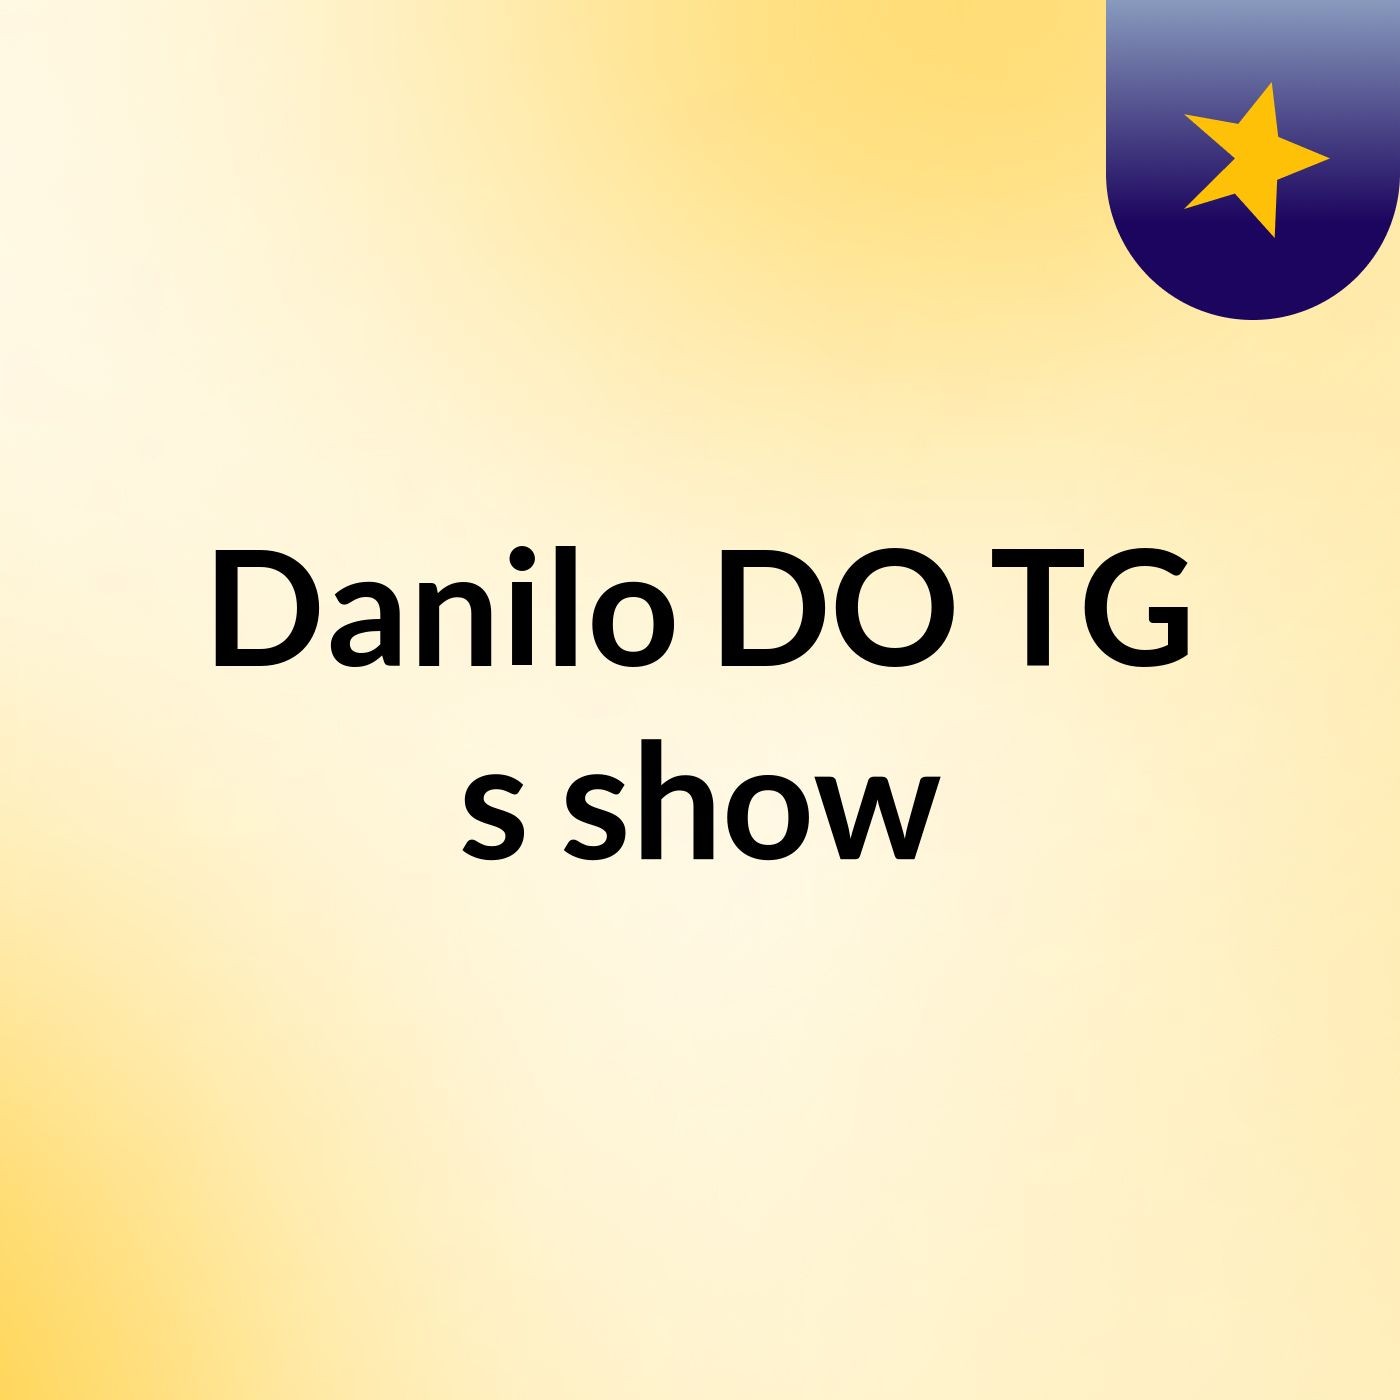 Danilo DO TG's show